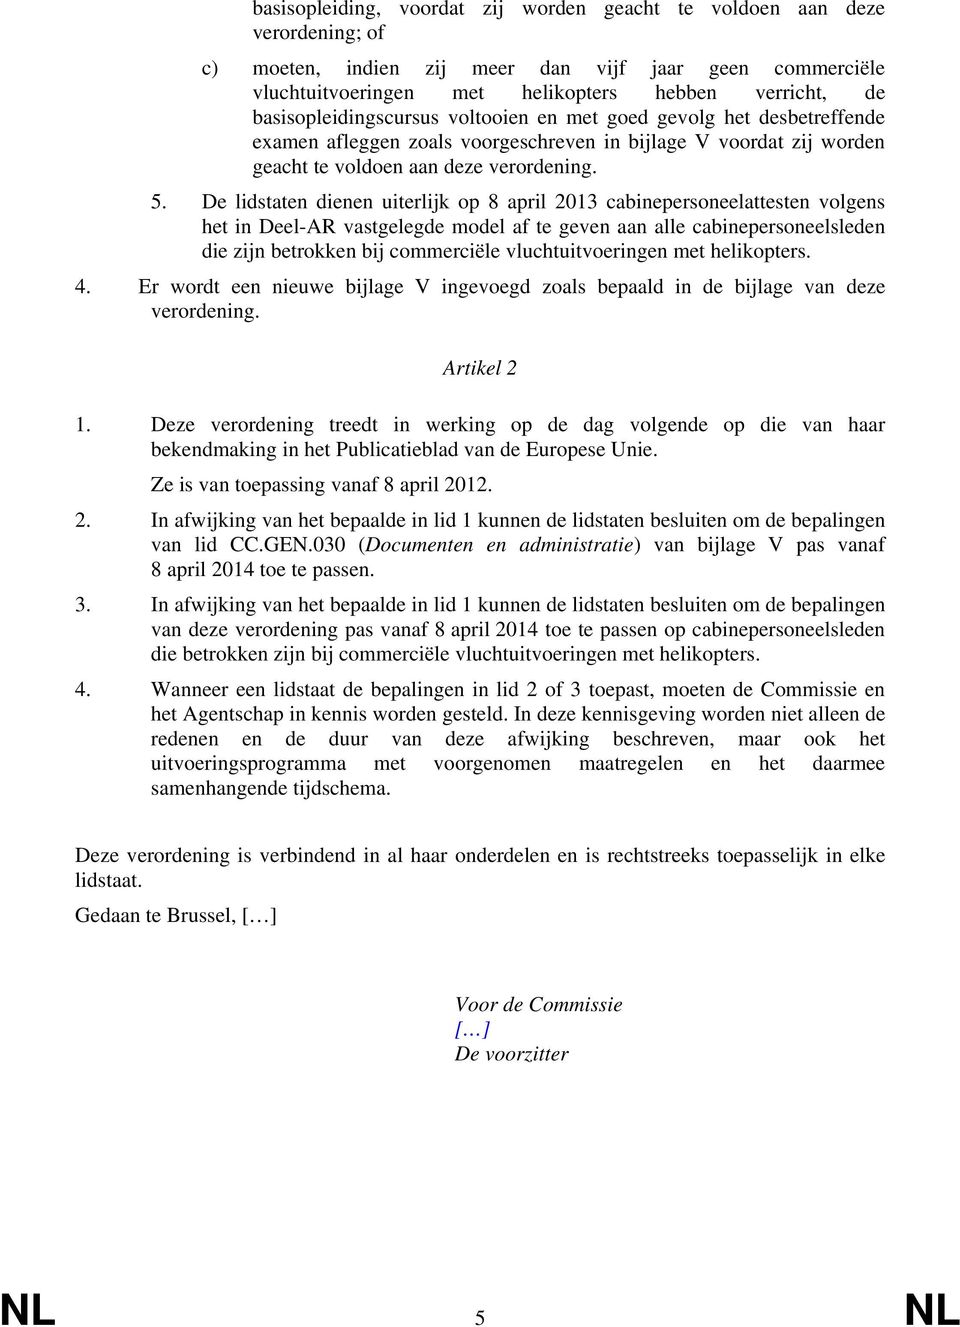 De lidstaten dienen uiterlijk op 8 april 2013 cabinepersoneelattesten volgens het in Deel-AR vastgelegde model af te geven aan alle cabinepersoneelsleden die zijn betrokken bij commerciële